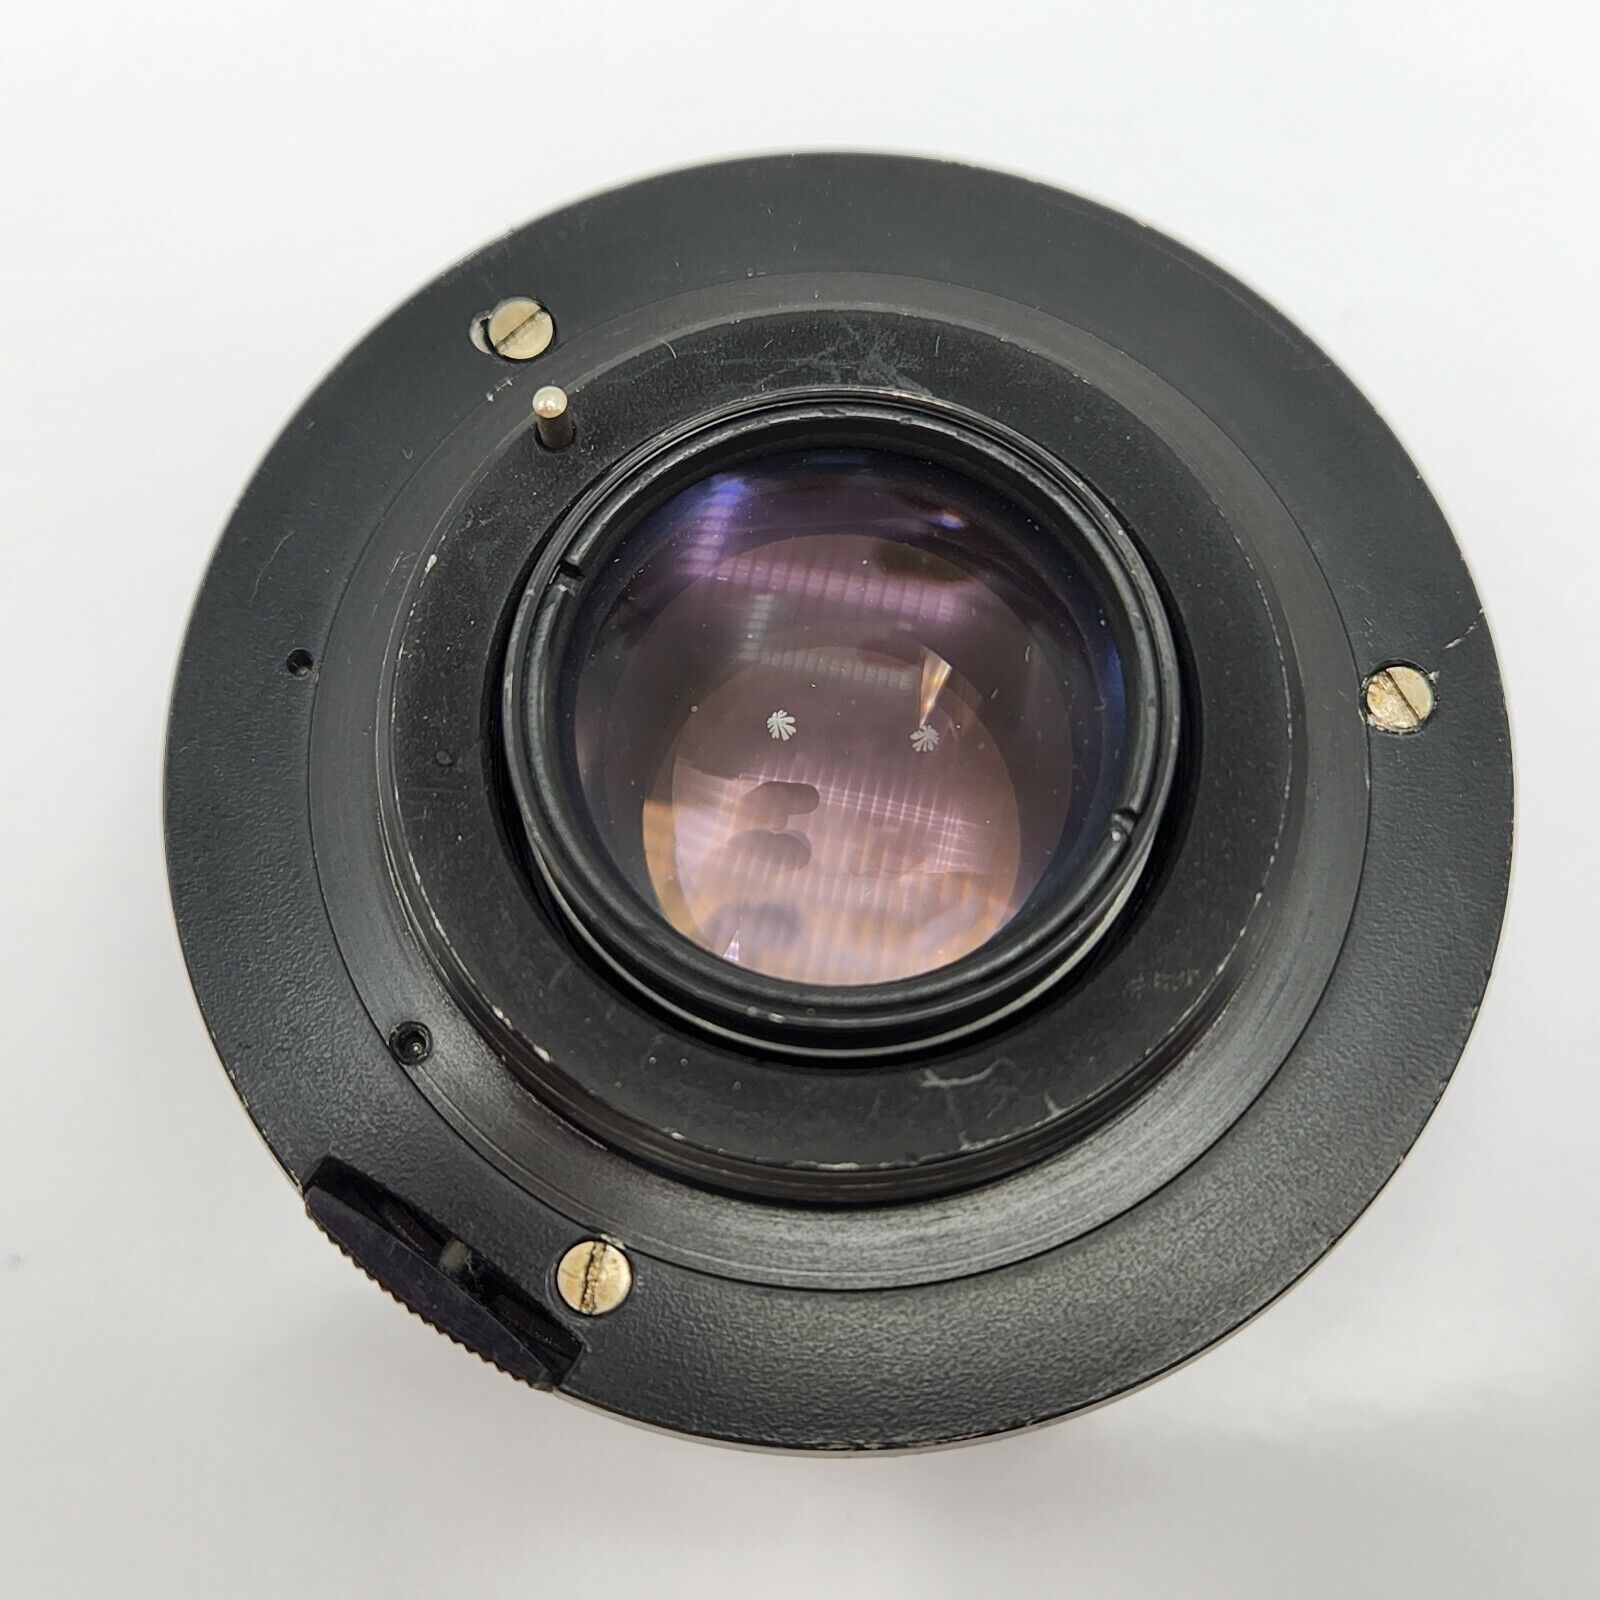 Meyer-Optik Gorlitz Oreston 50mm F1.8 Prime Lens for M42 Mount 